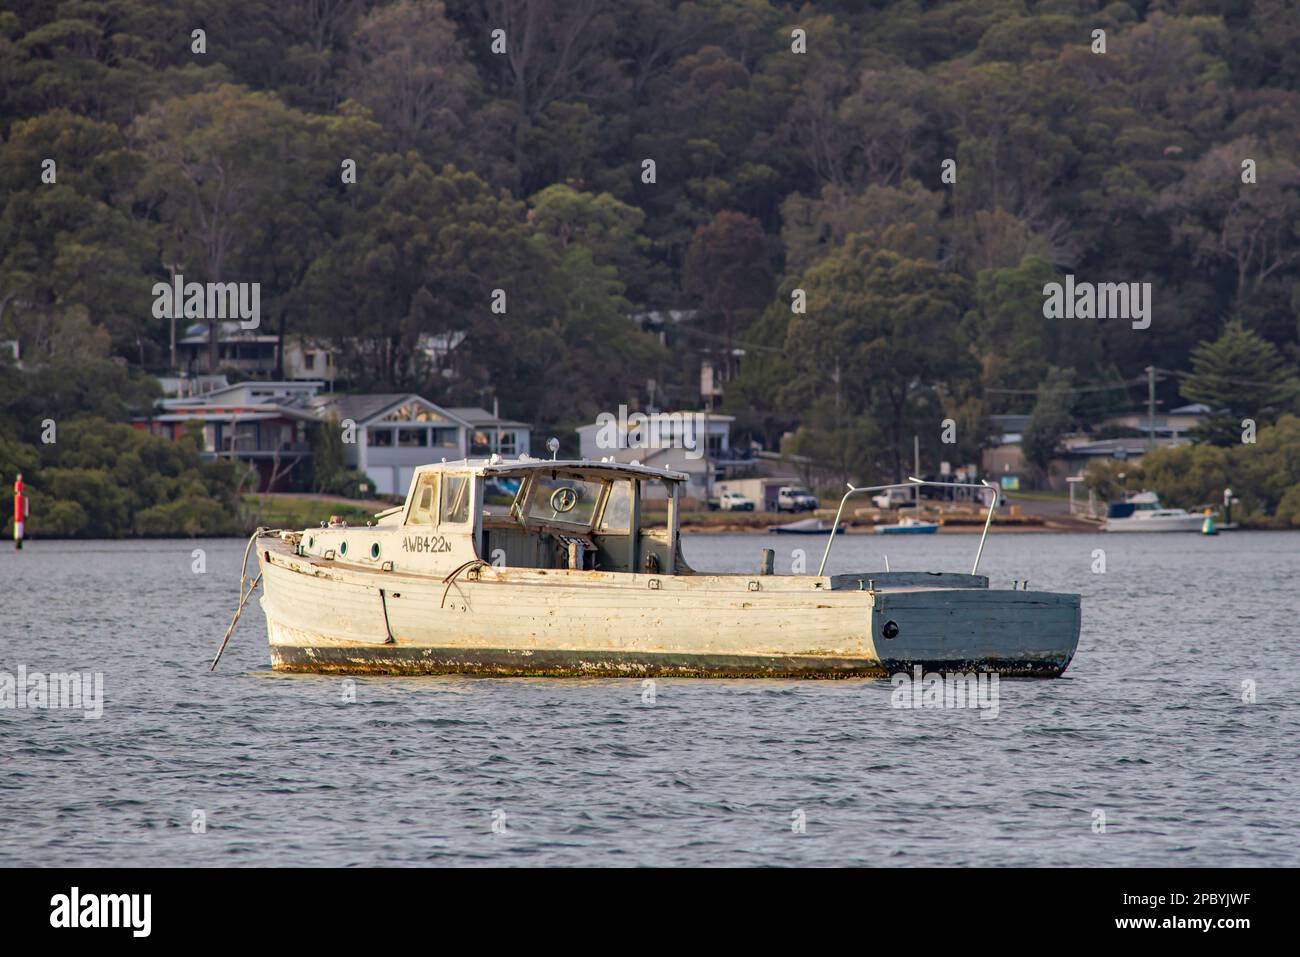 Ehemaliges Arbeitsboot der Armee aus dem 2. Weltkrieg 40ft, AWB422, am Ettalong Beach festgemacht und etwas schlechter getragen, aber noch registriert und in Gebrauch. Stockfoto